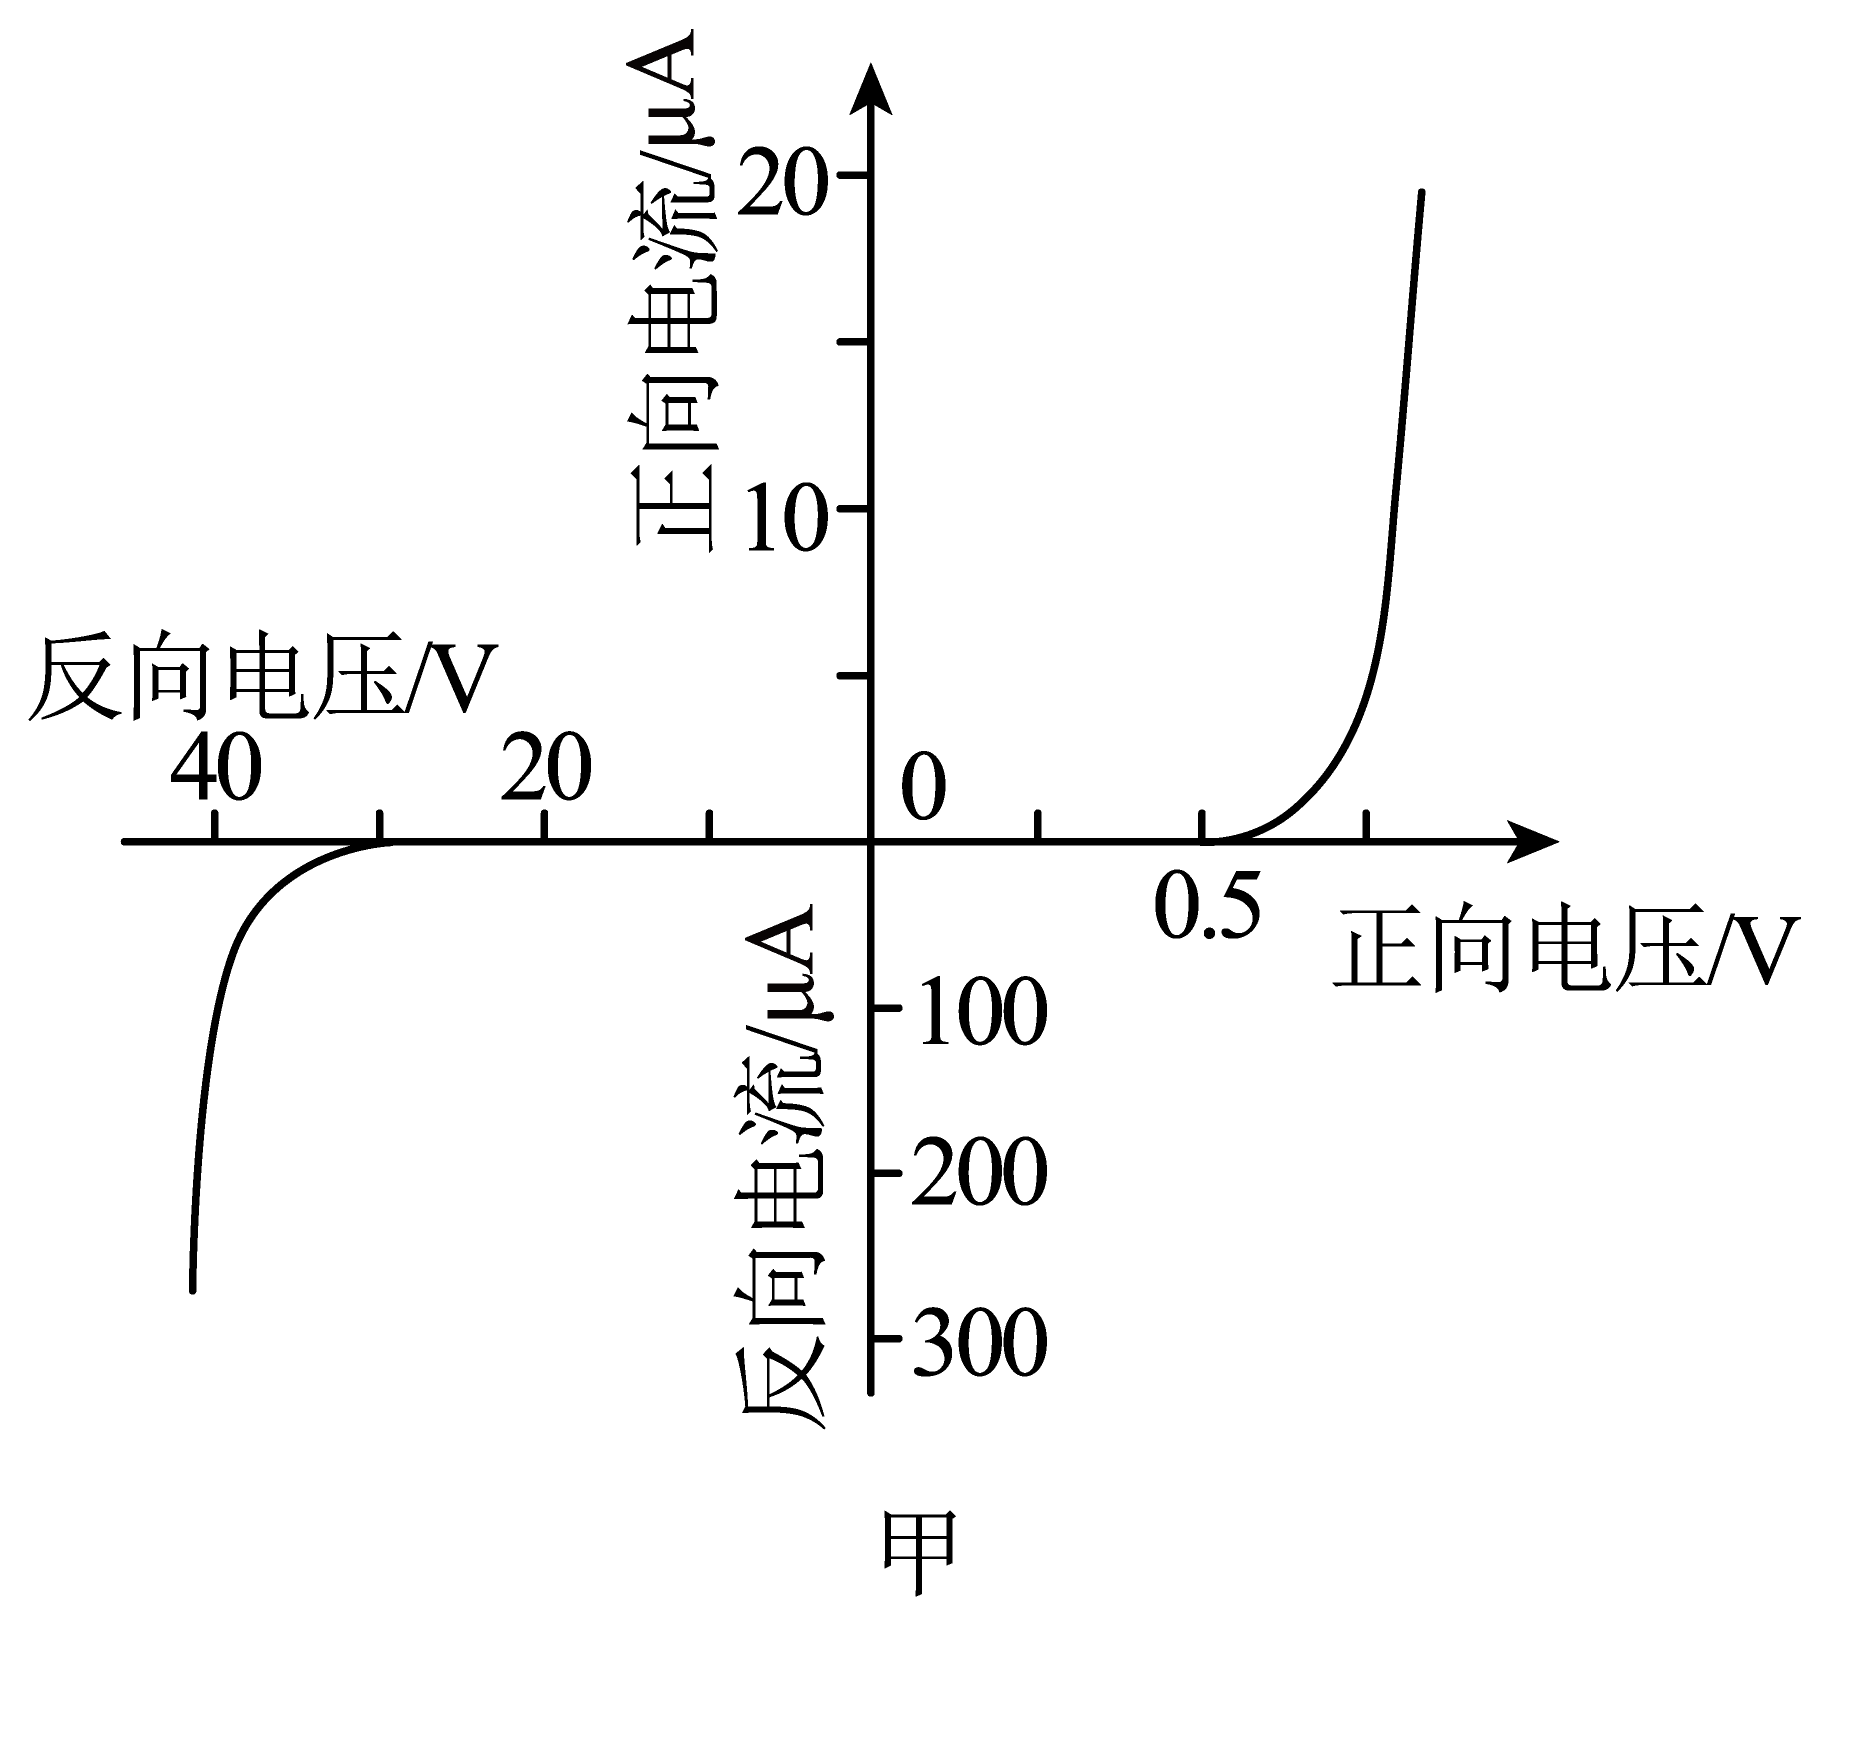 如图甲所示是某二极管的伏安特性曲线一学习小组想要验证二极管加反向